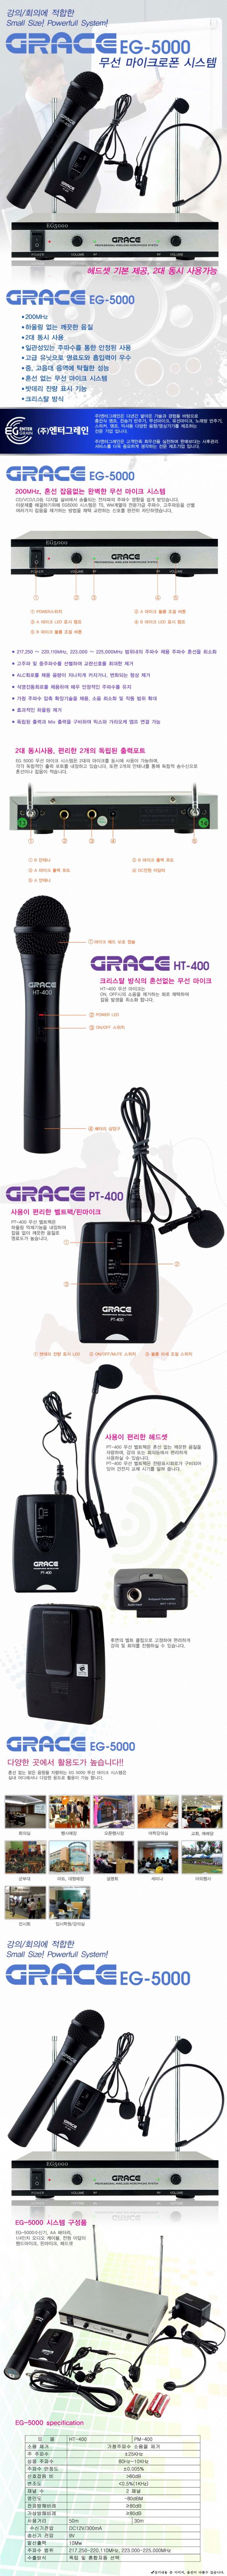 GRACE EG-5000-IMG001.jpg